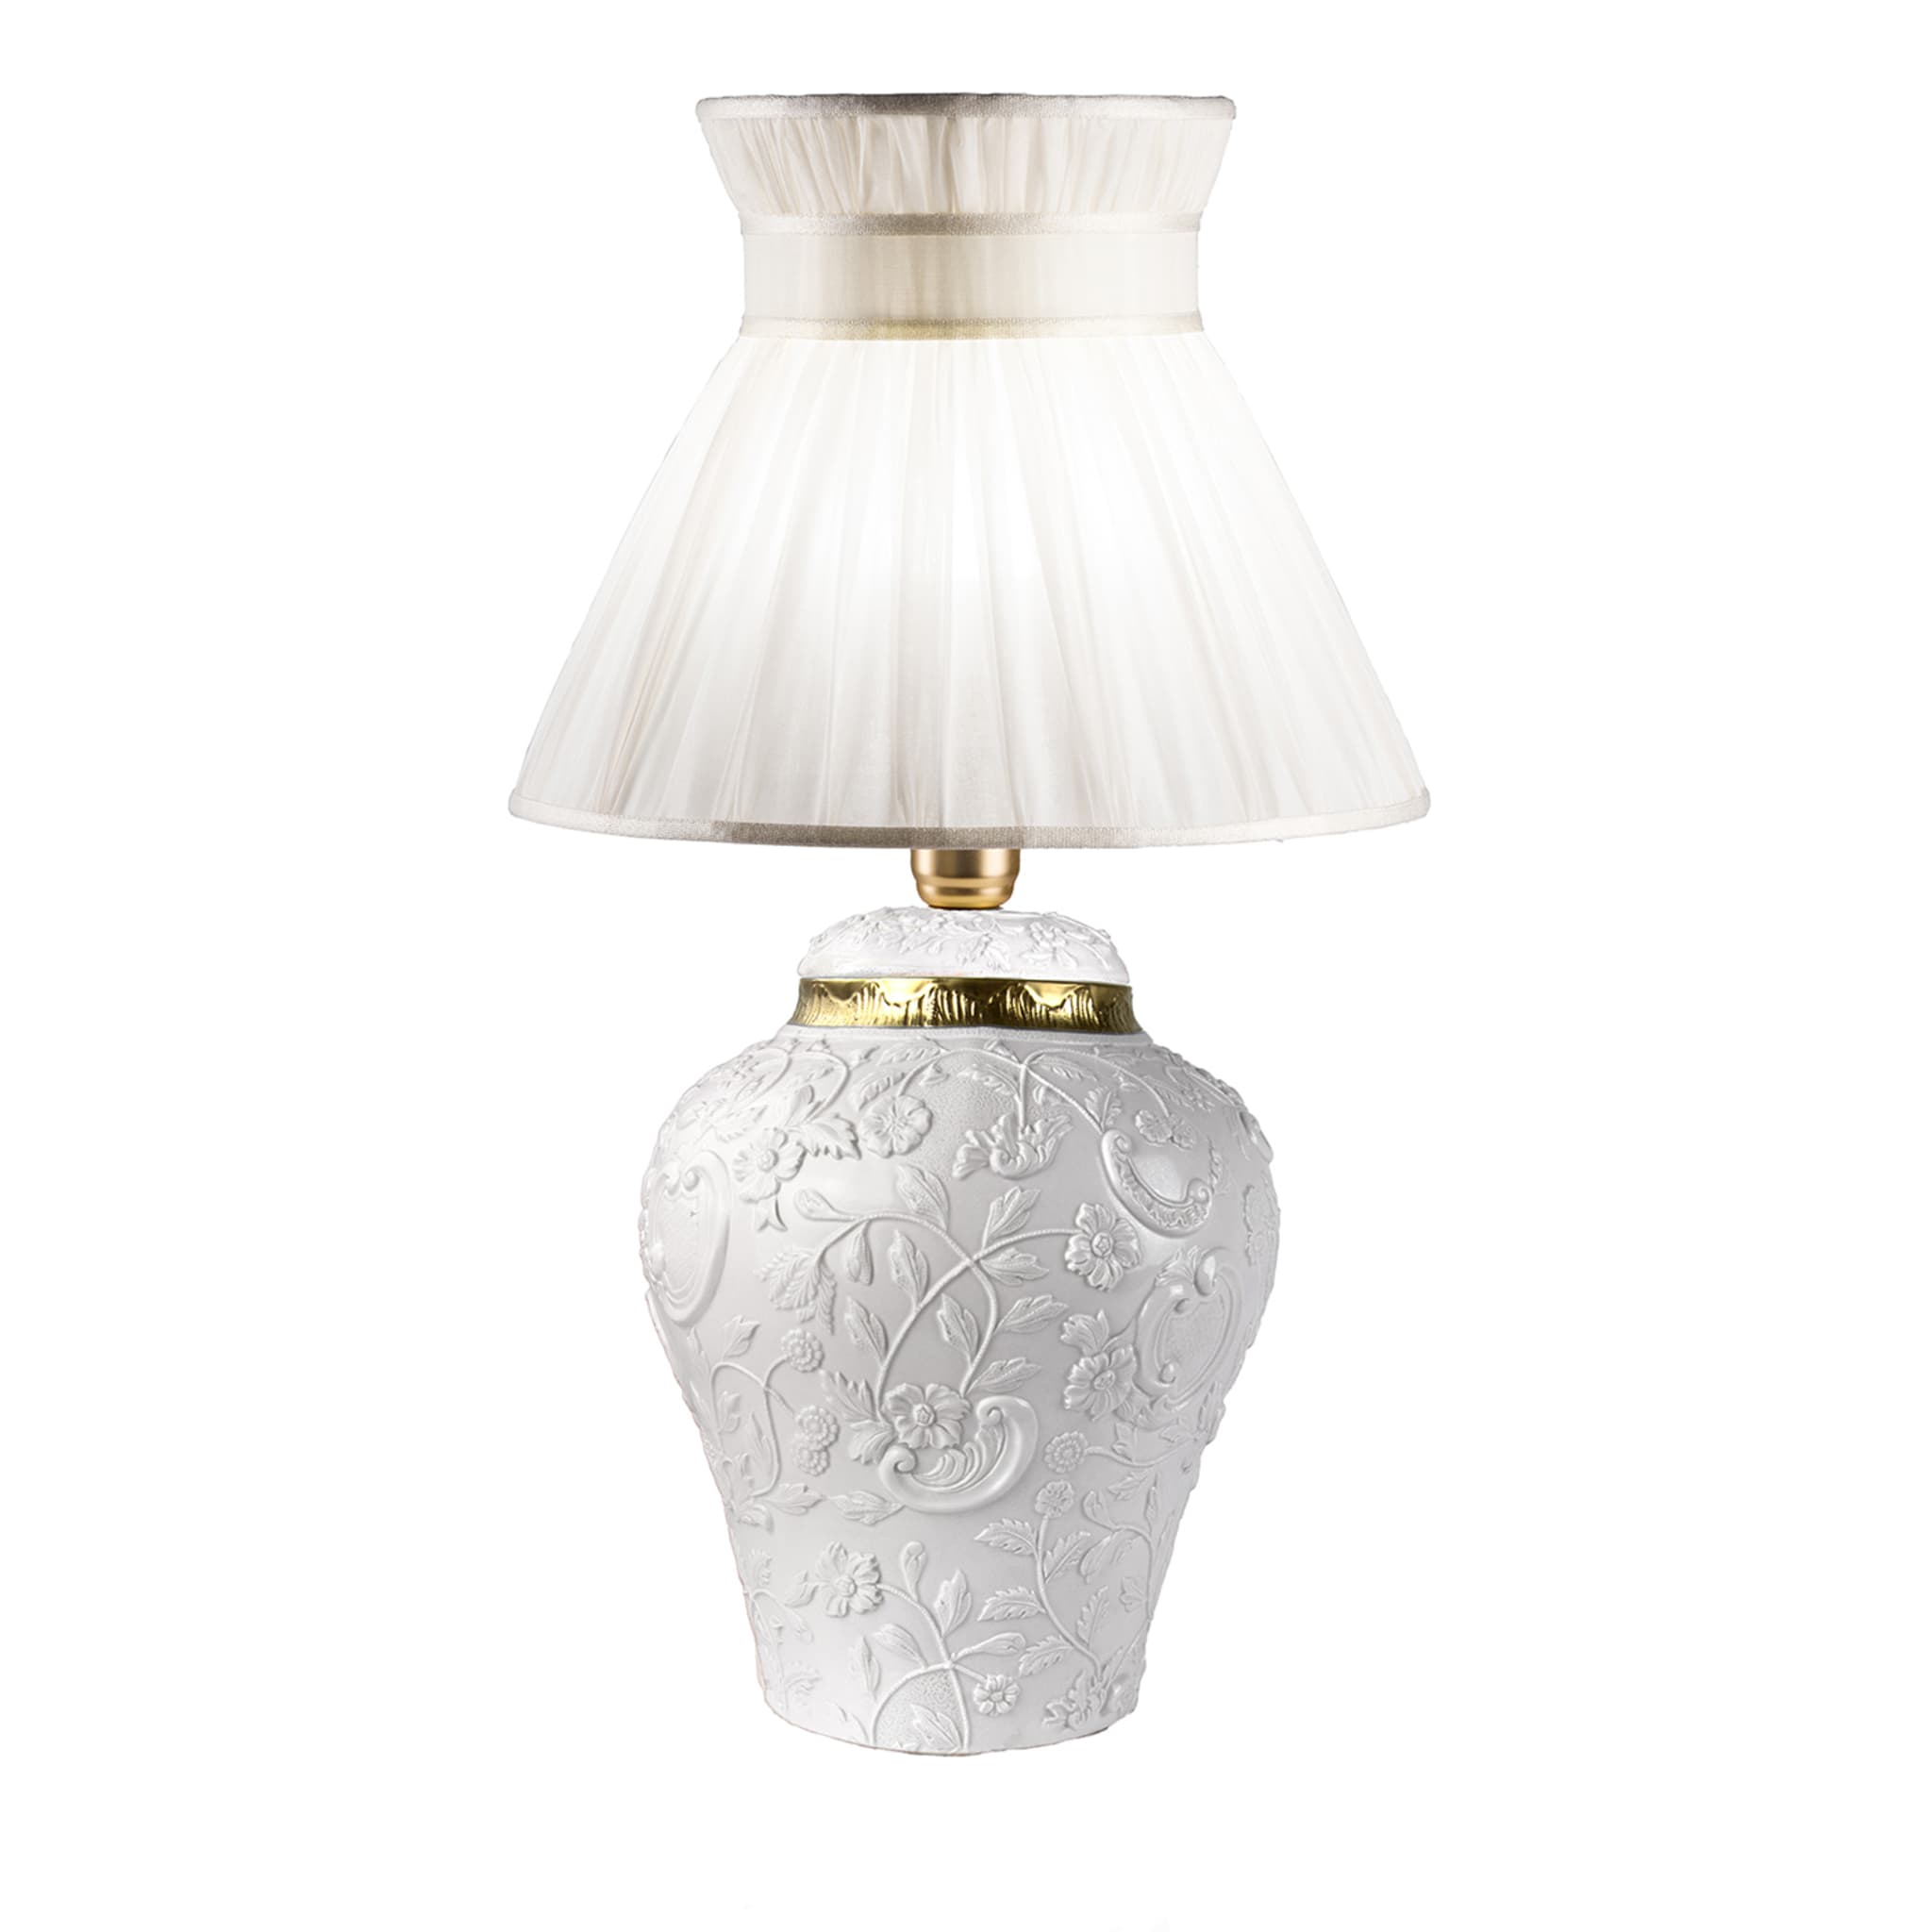 Petite lampe à poser blanche Taormina - Vue principale